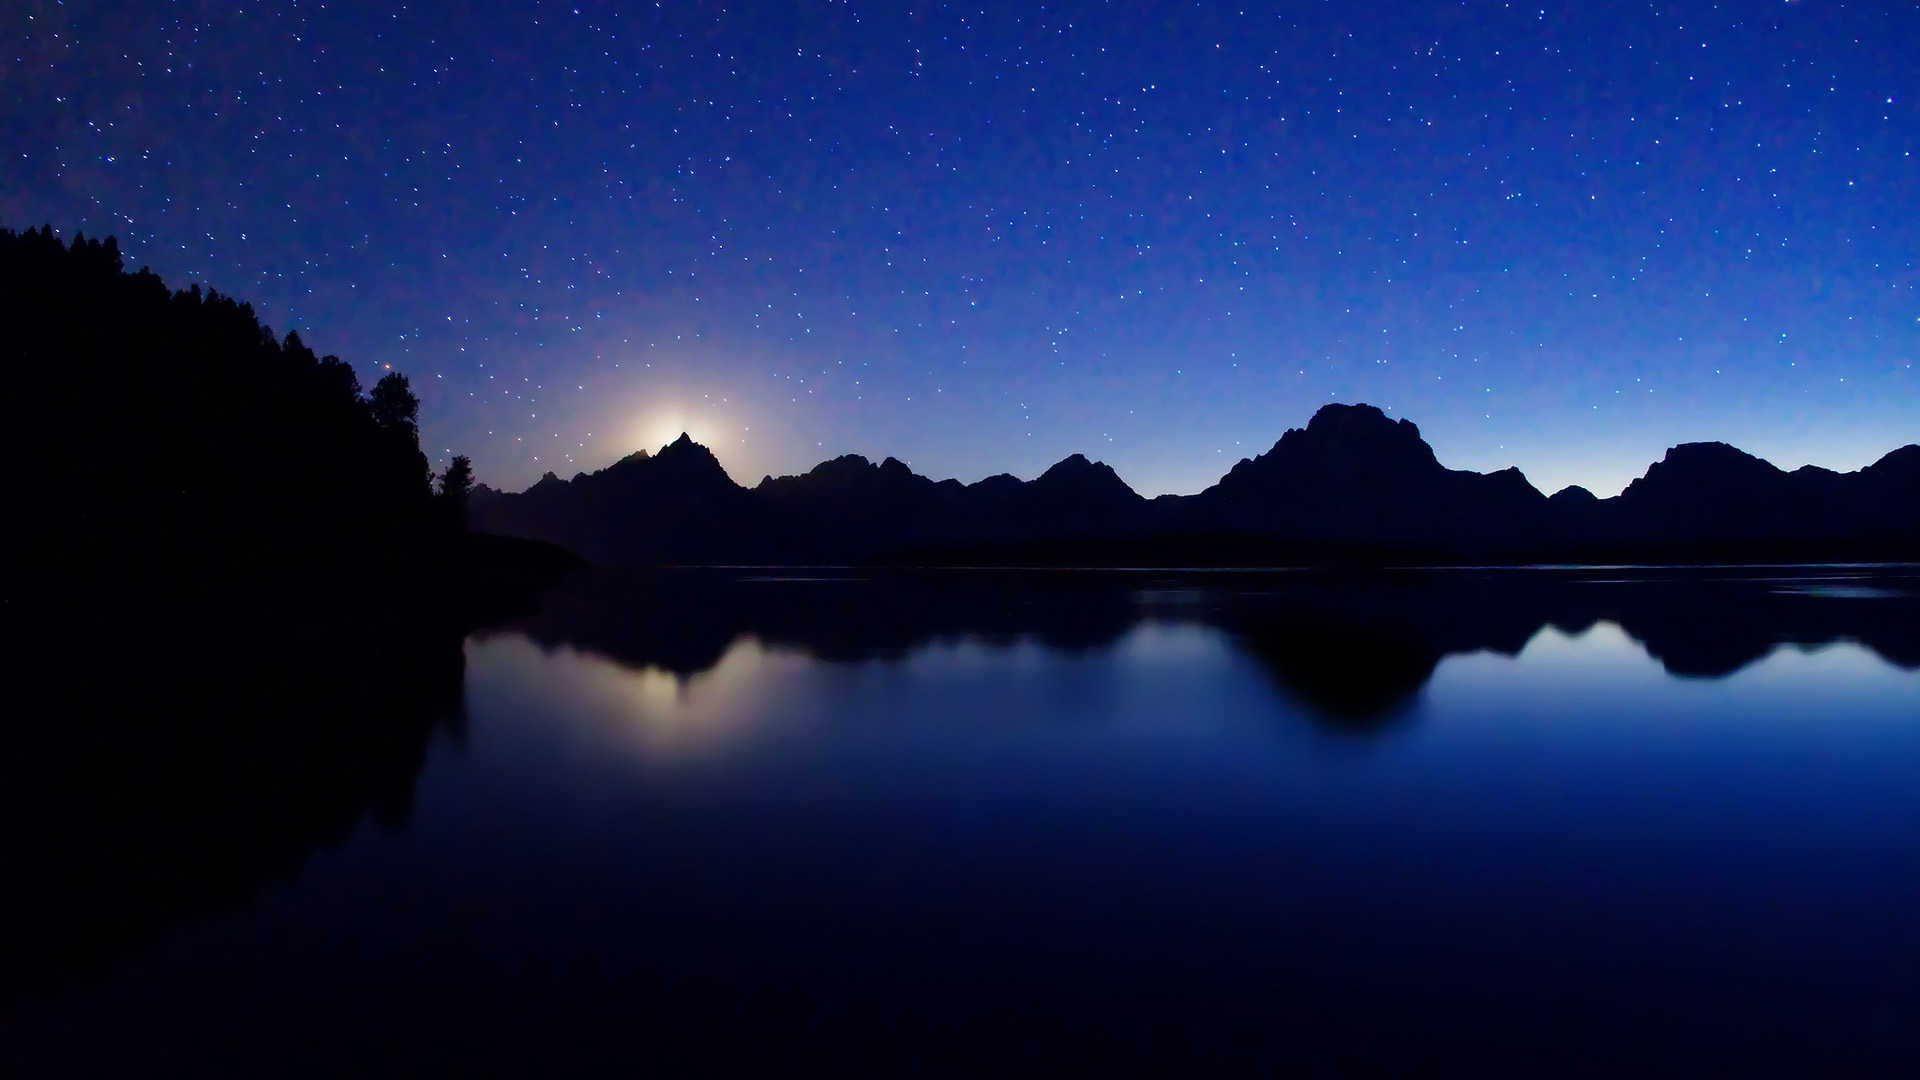 晚上,杰克逊湖,山,星星,宽屏风景桌面壁纸